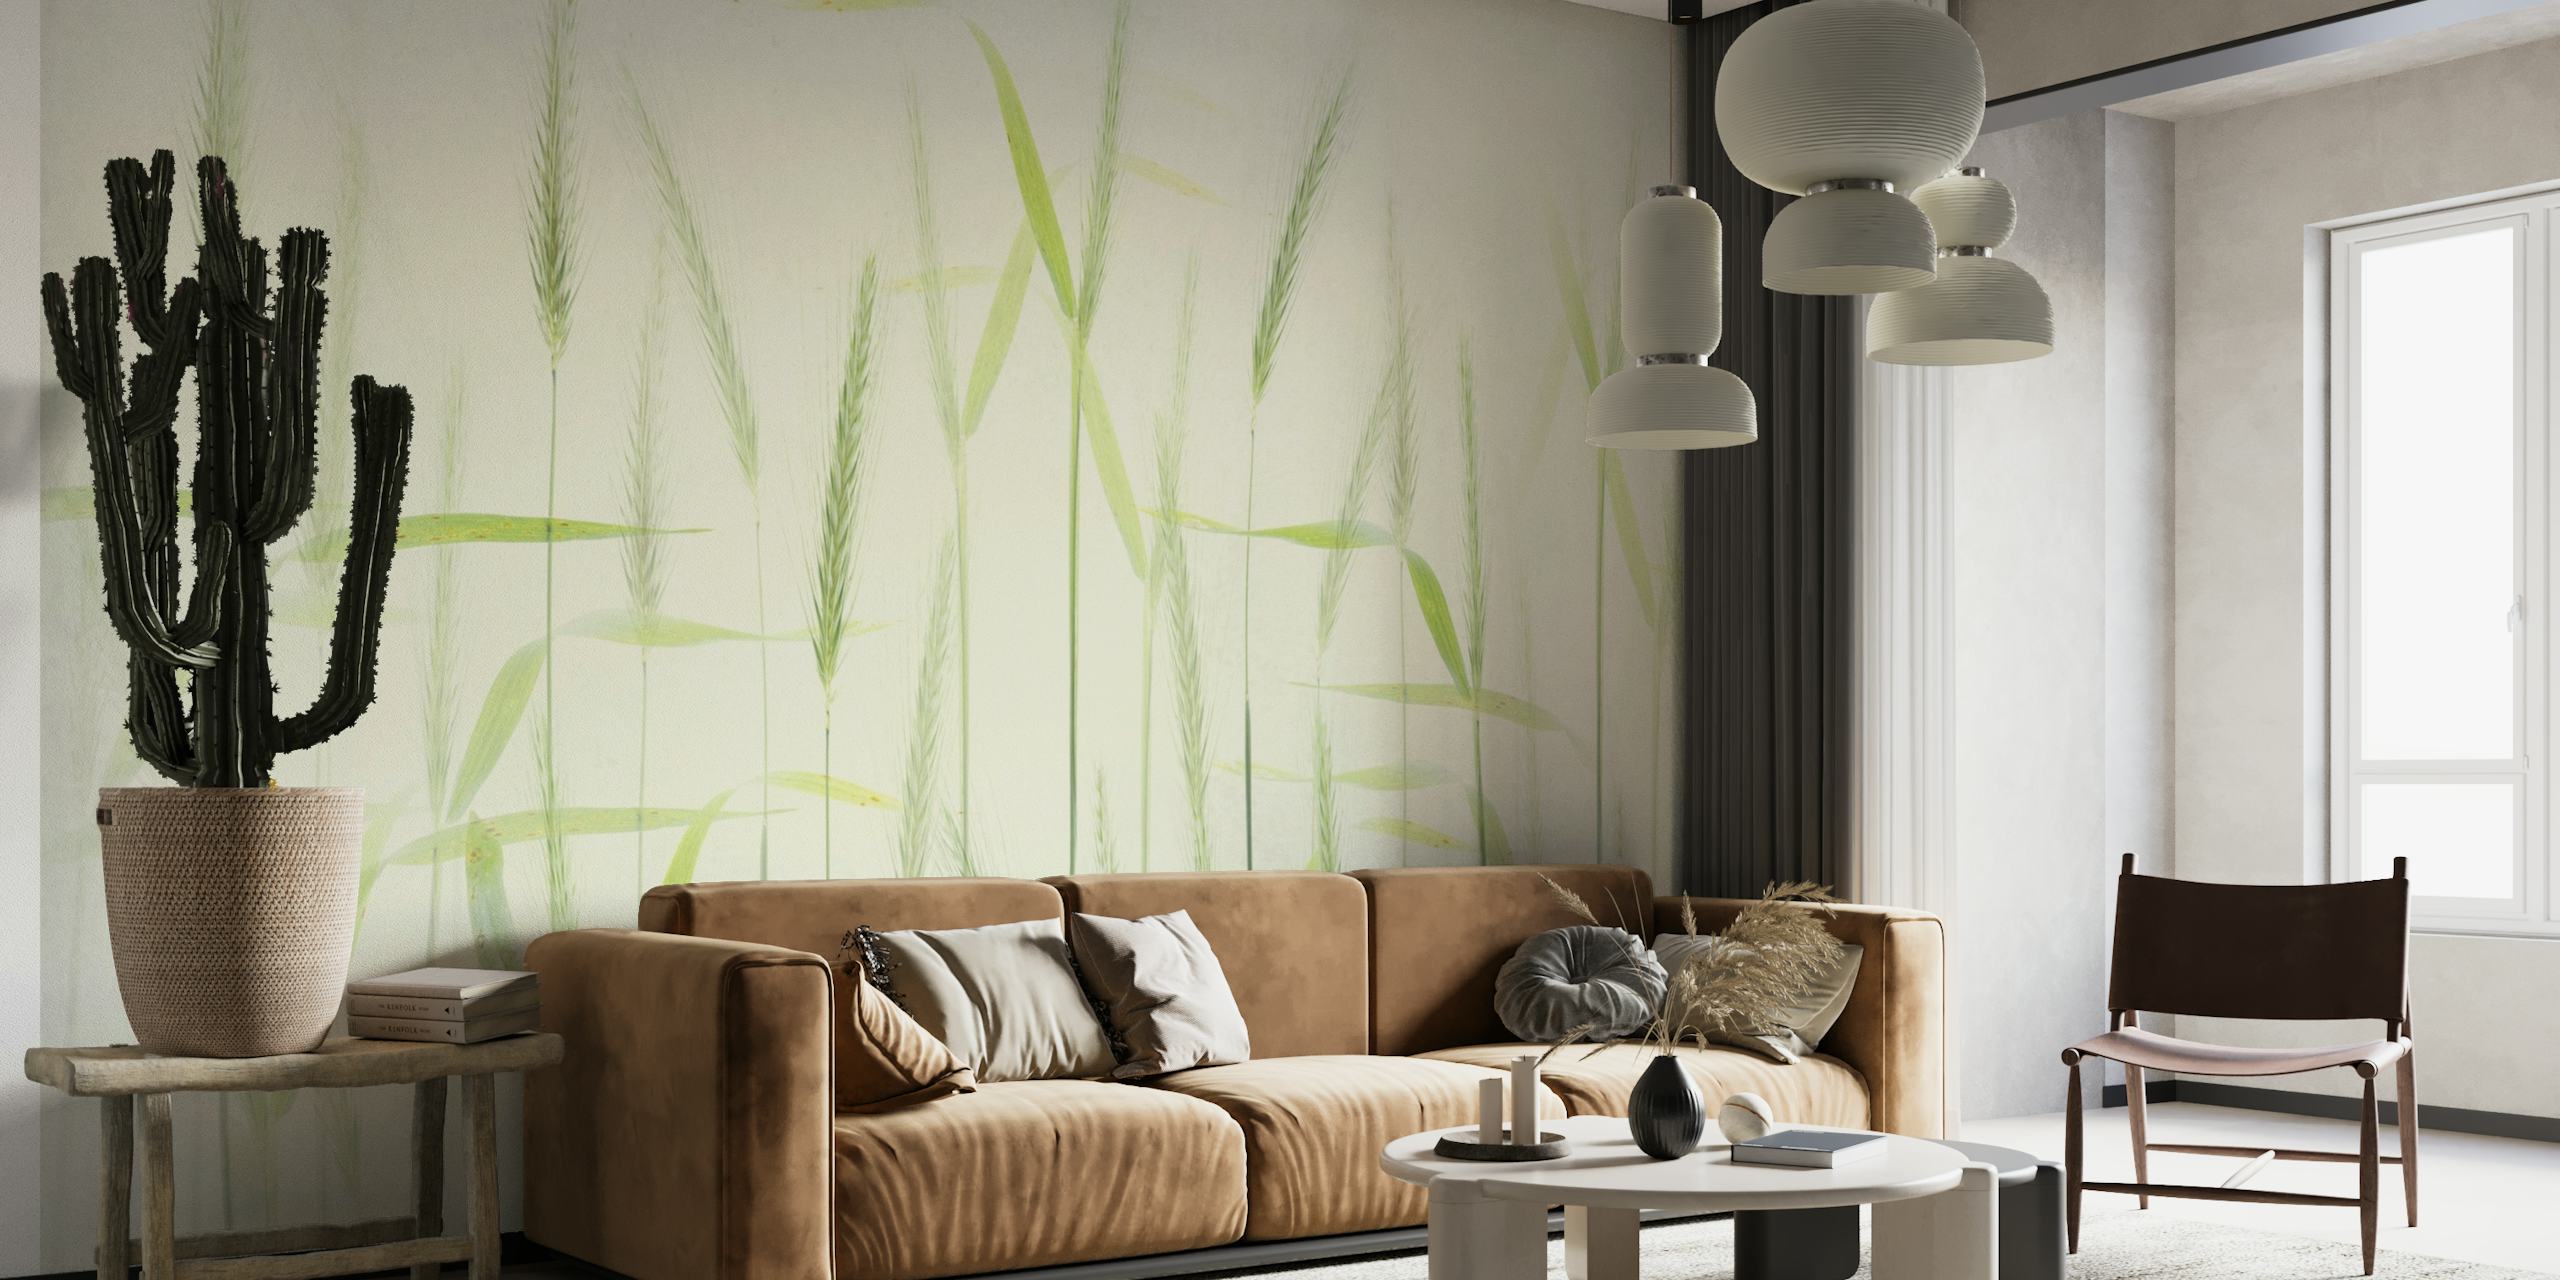 Fotomural vinílico de parede elegante de talos de milho macios com suaves tons verdes em um fundo esbranquiçado.